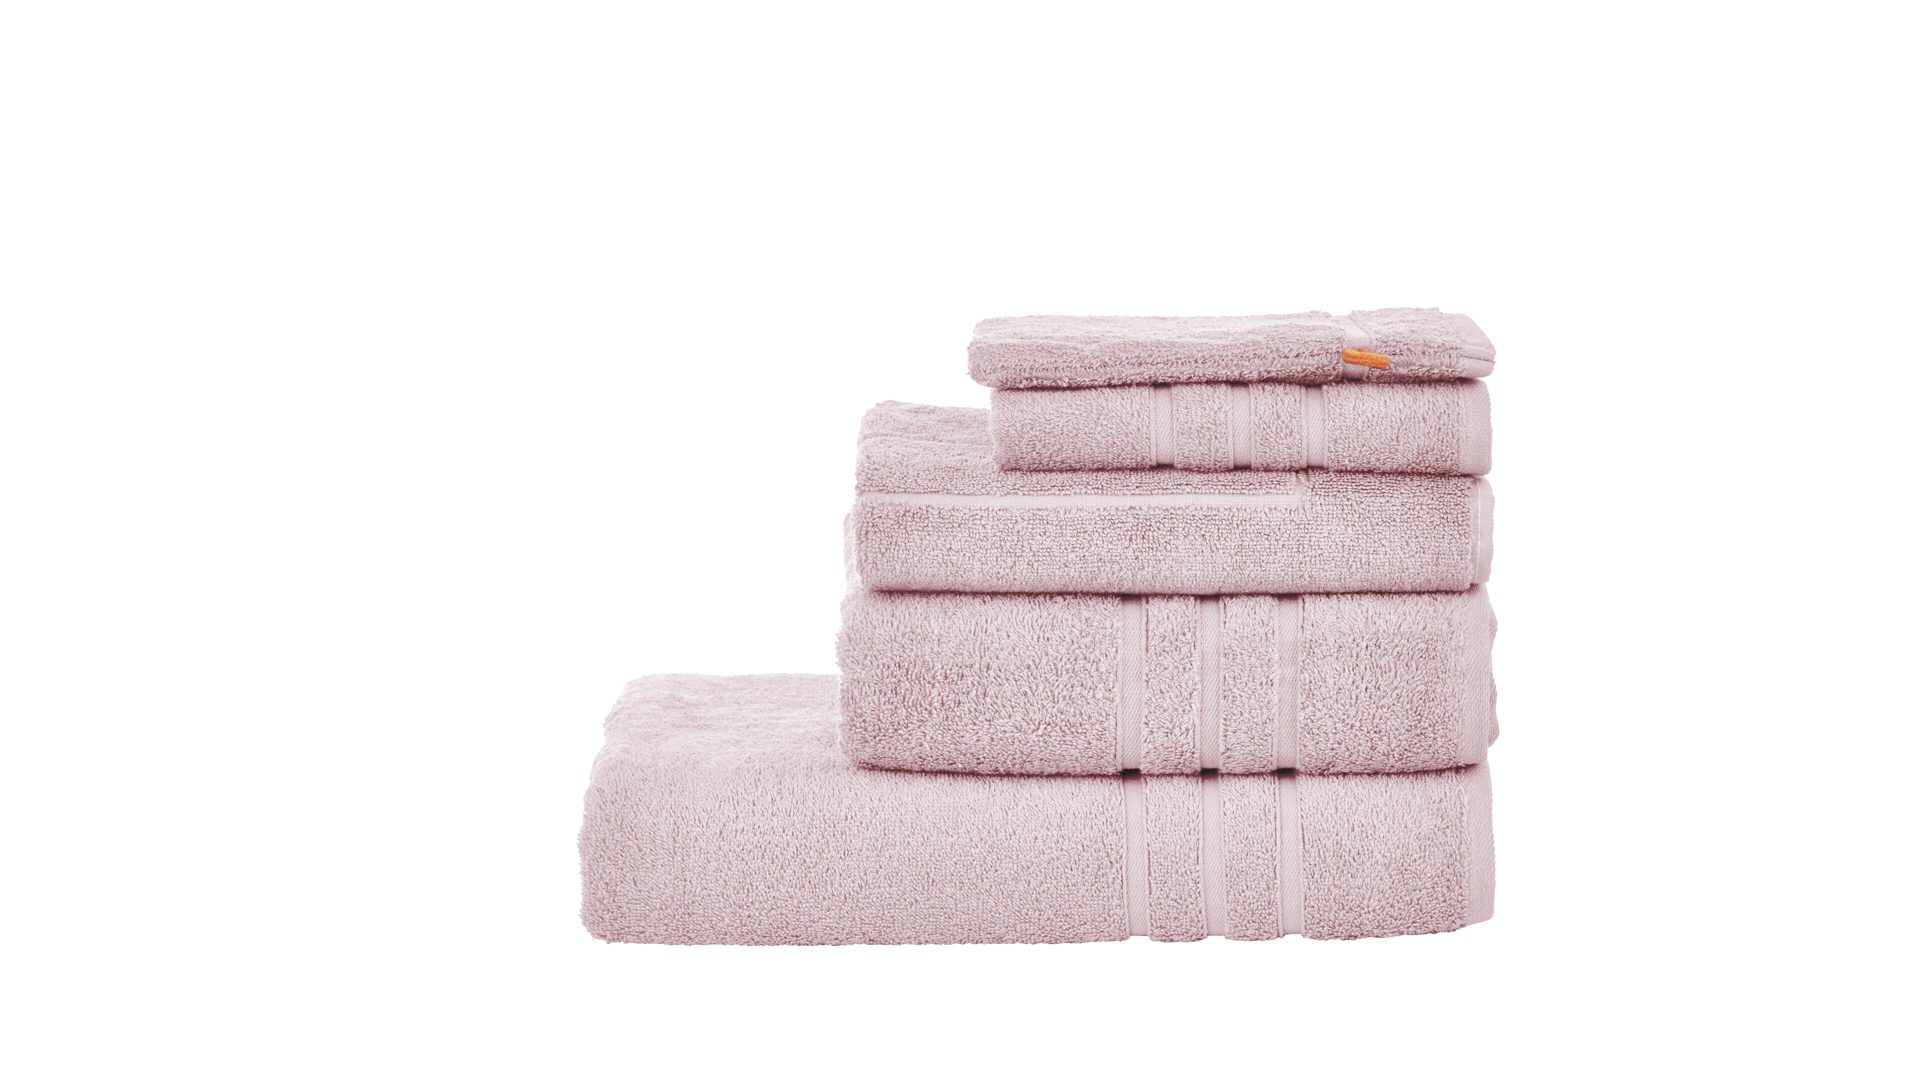 Handtuch-Set Done by karabel home company aus Stoff in Pastellfarben Done Handtuch-Set Daily Uni altrosafarben Baumwolle – fünfteilig